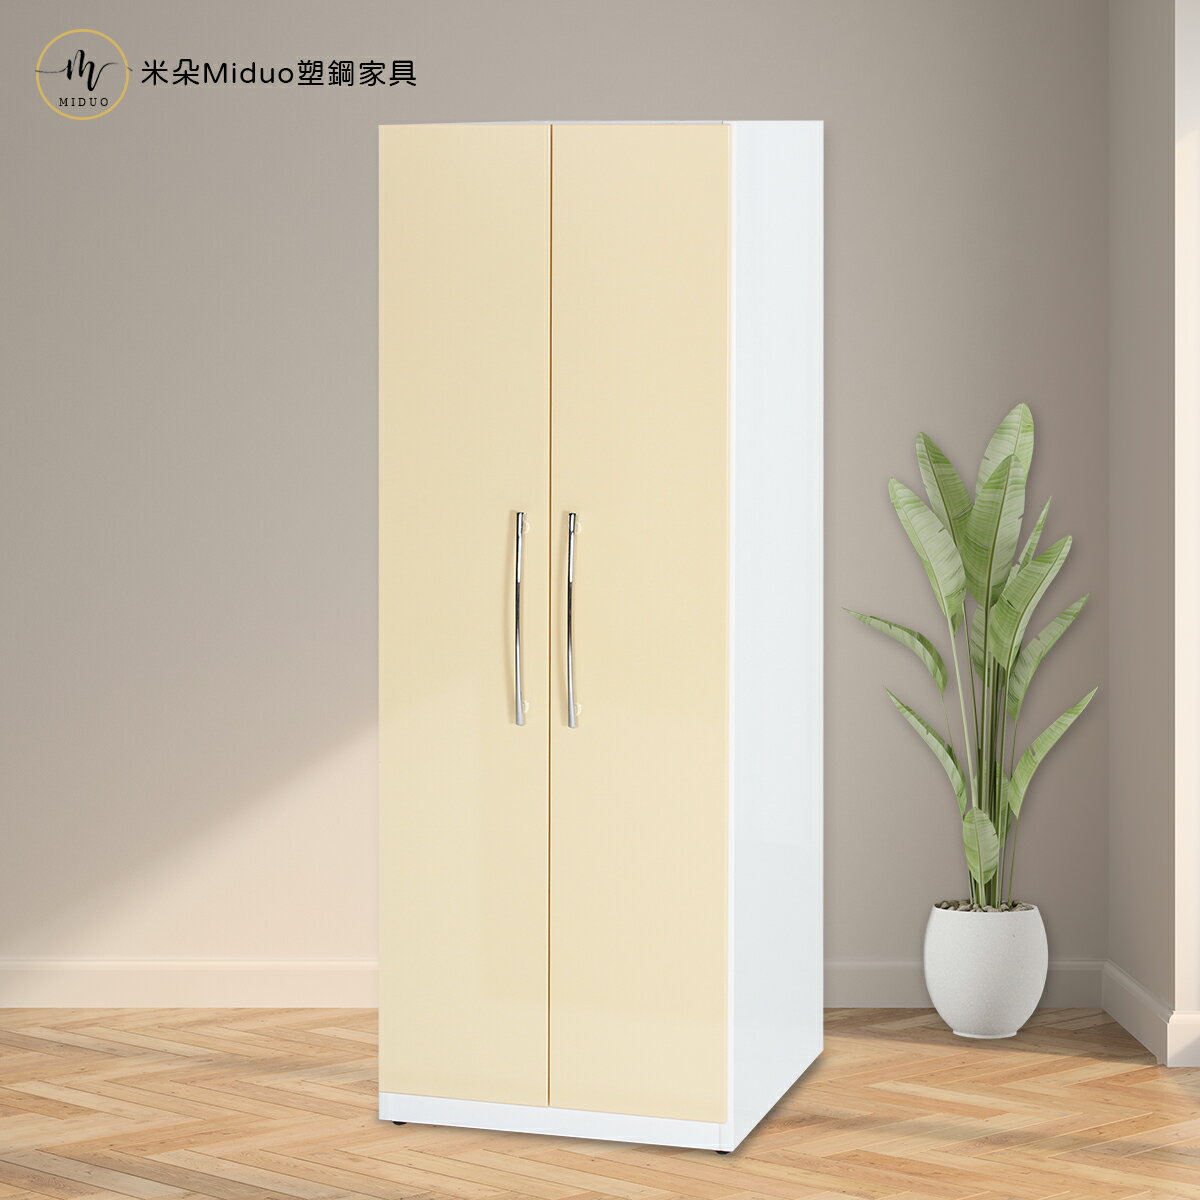 2.1尺兩門塑鋼衣櫥 衣櫃 防水塑鋼家具【米朵Miduo】